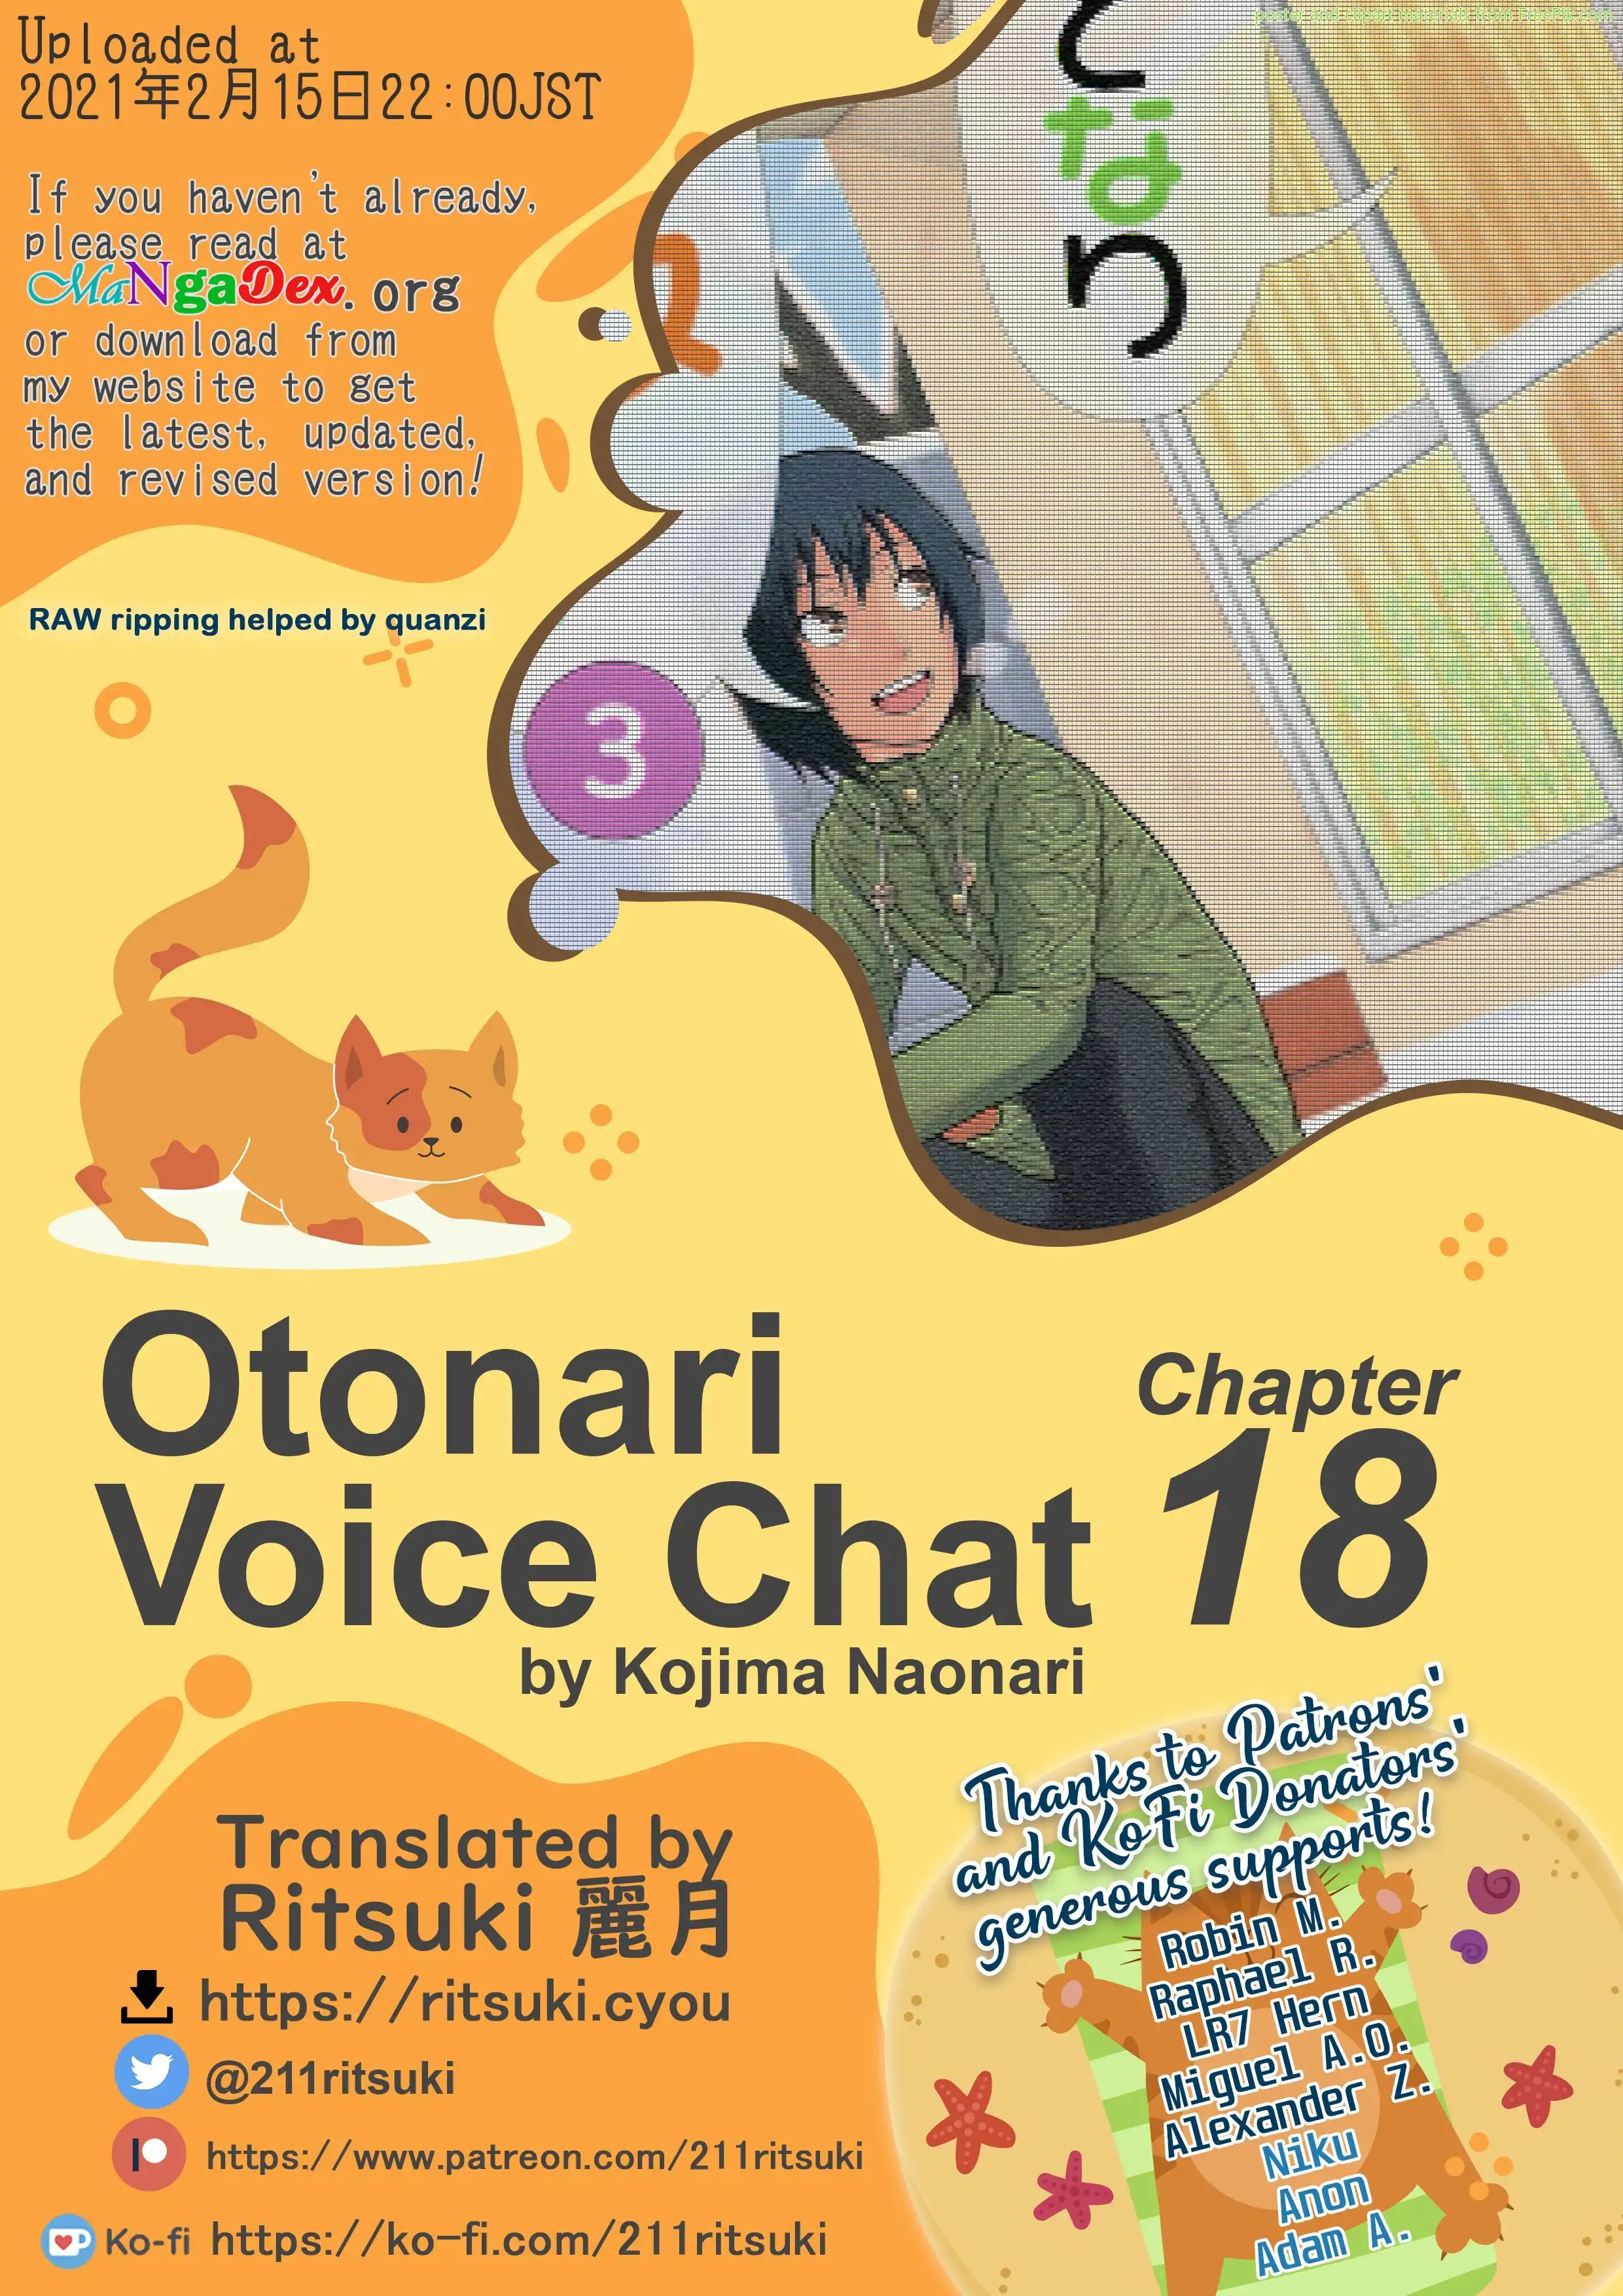 Otonari Voice Chat Chapter 18